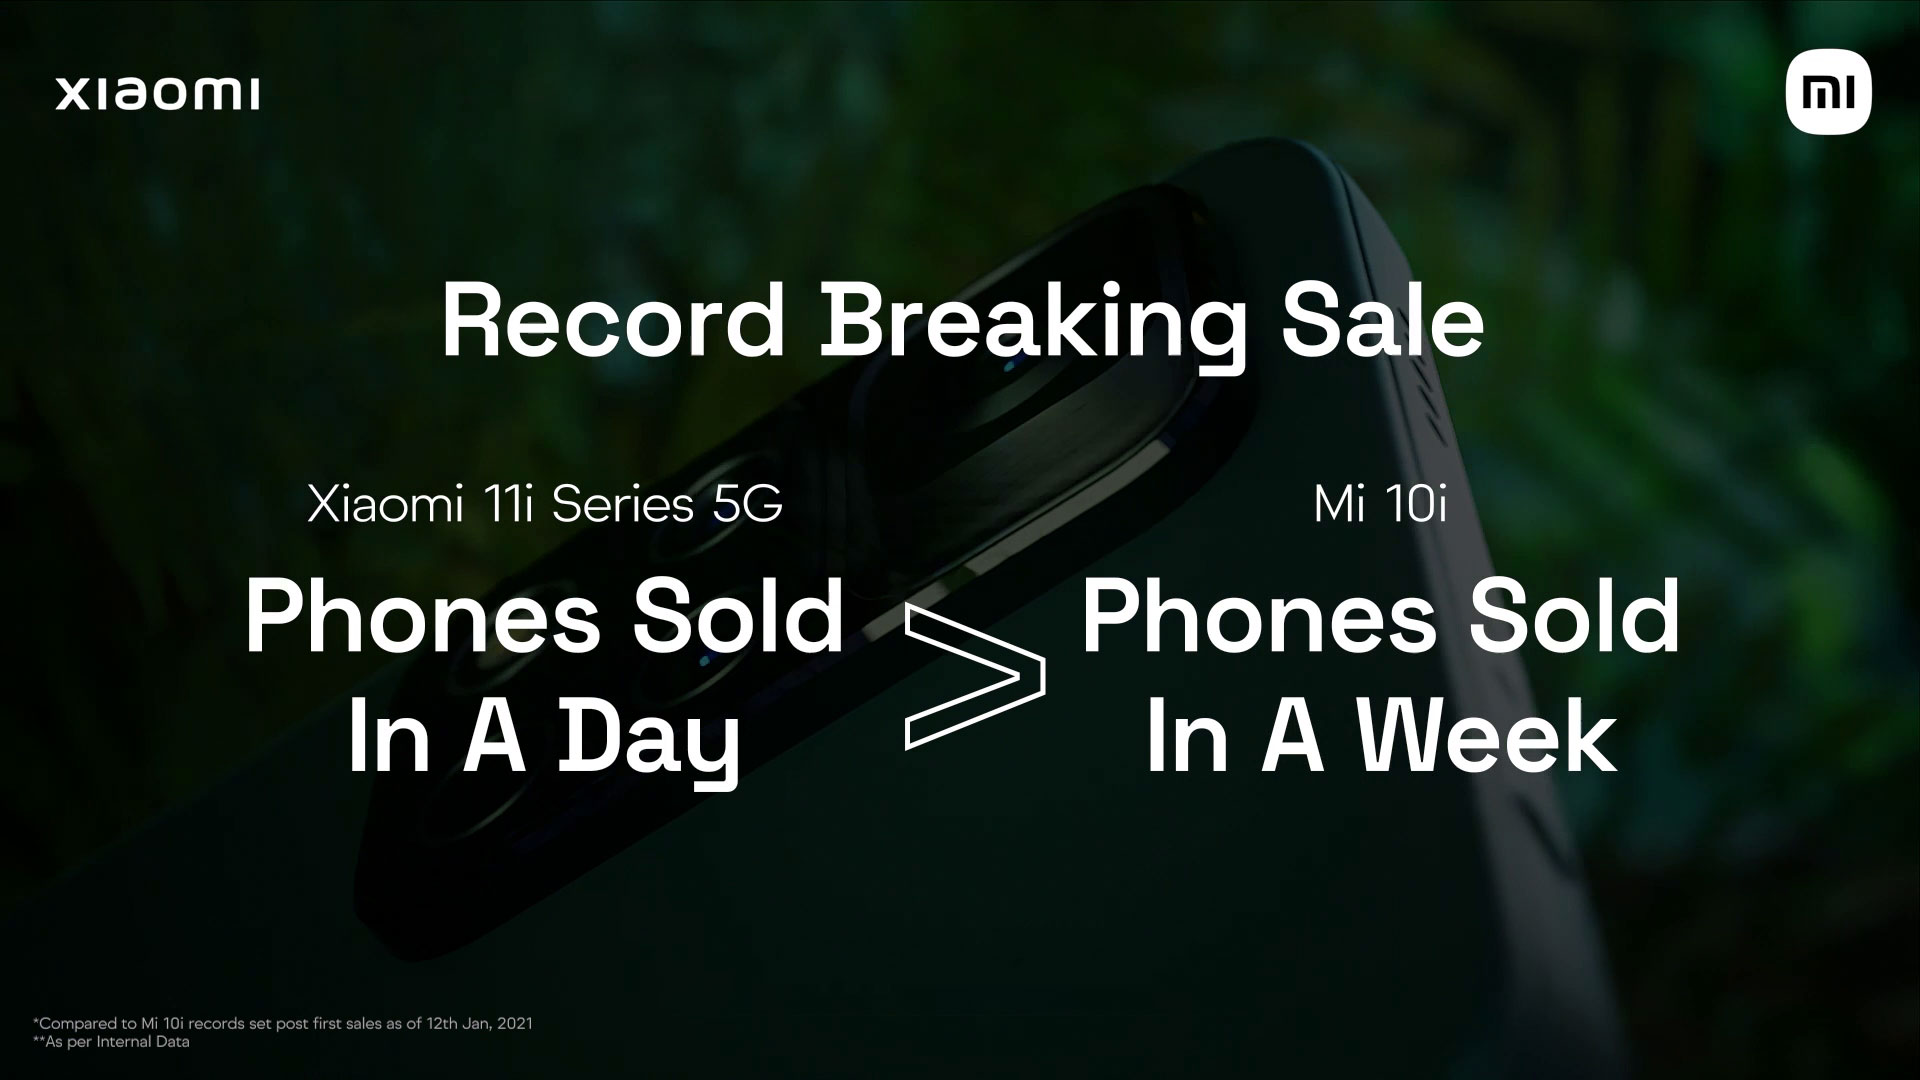 Los teléfonos inteligentes Xiaomi 11i establecen un nuevo récord: más modelos vendidos en un día que Xiaomi Mi 10i en una semana